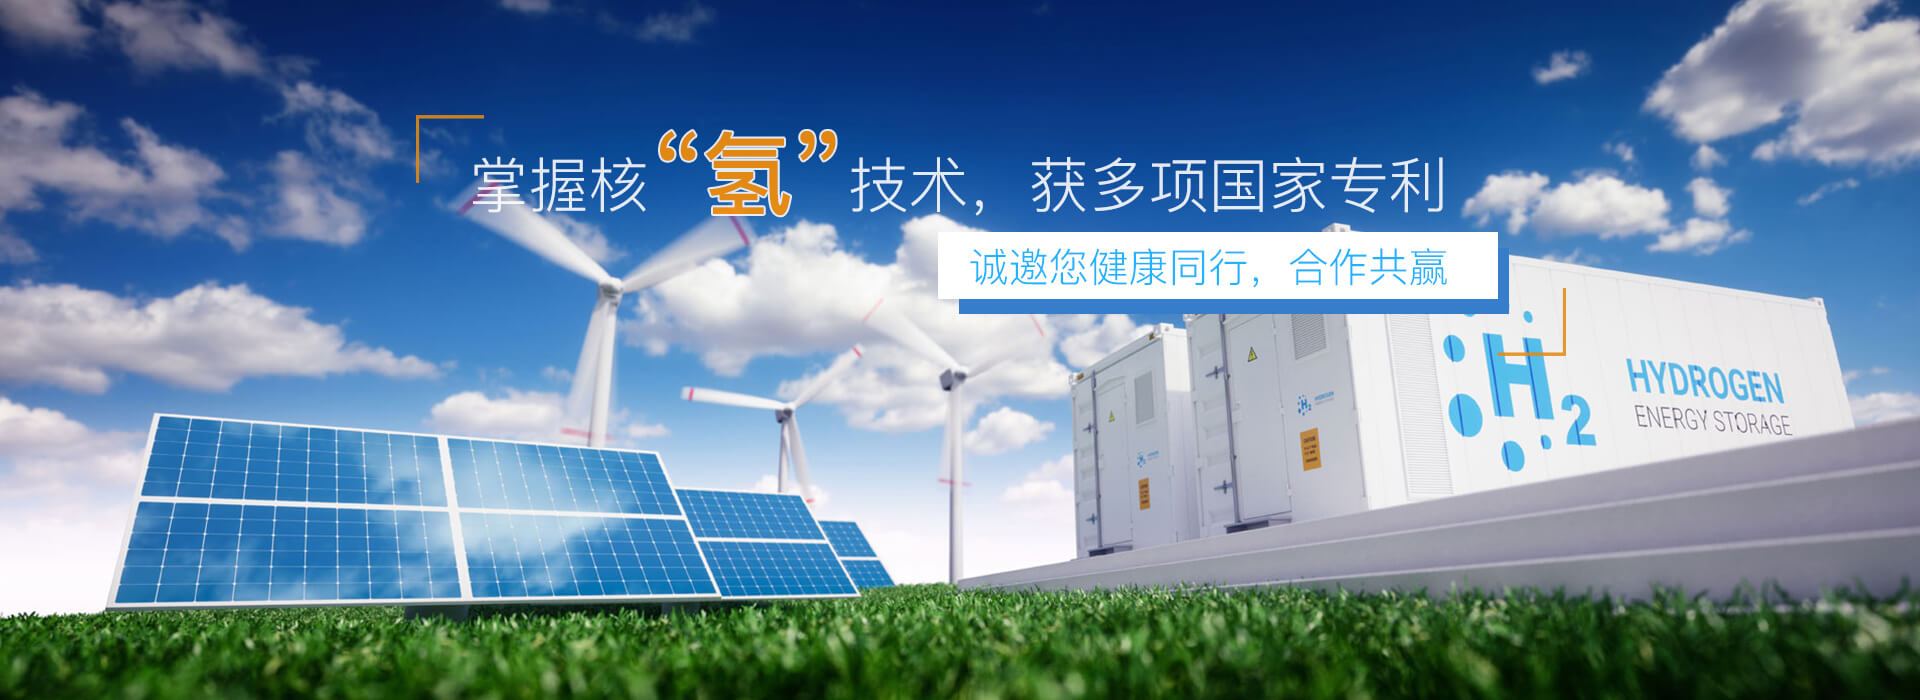 南京軒轅氫能源科技有限公司